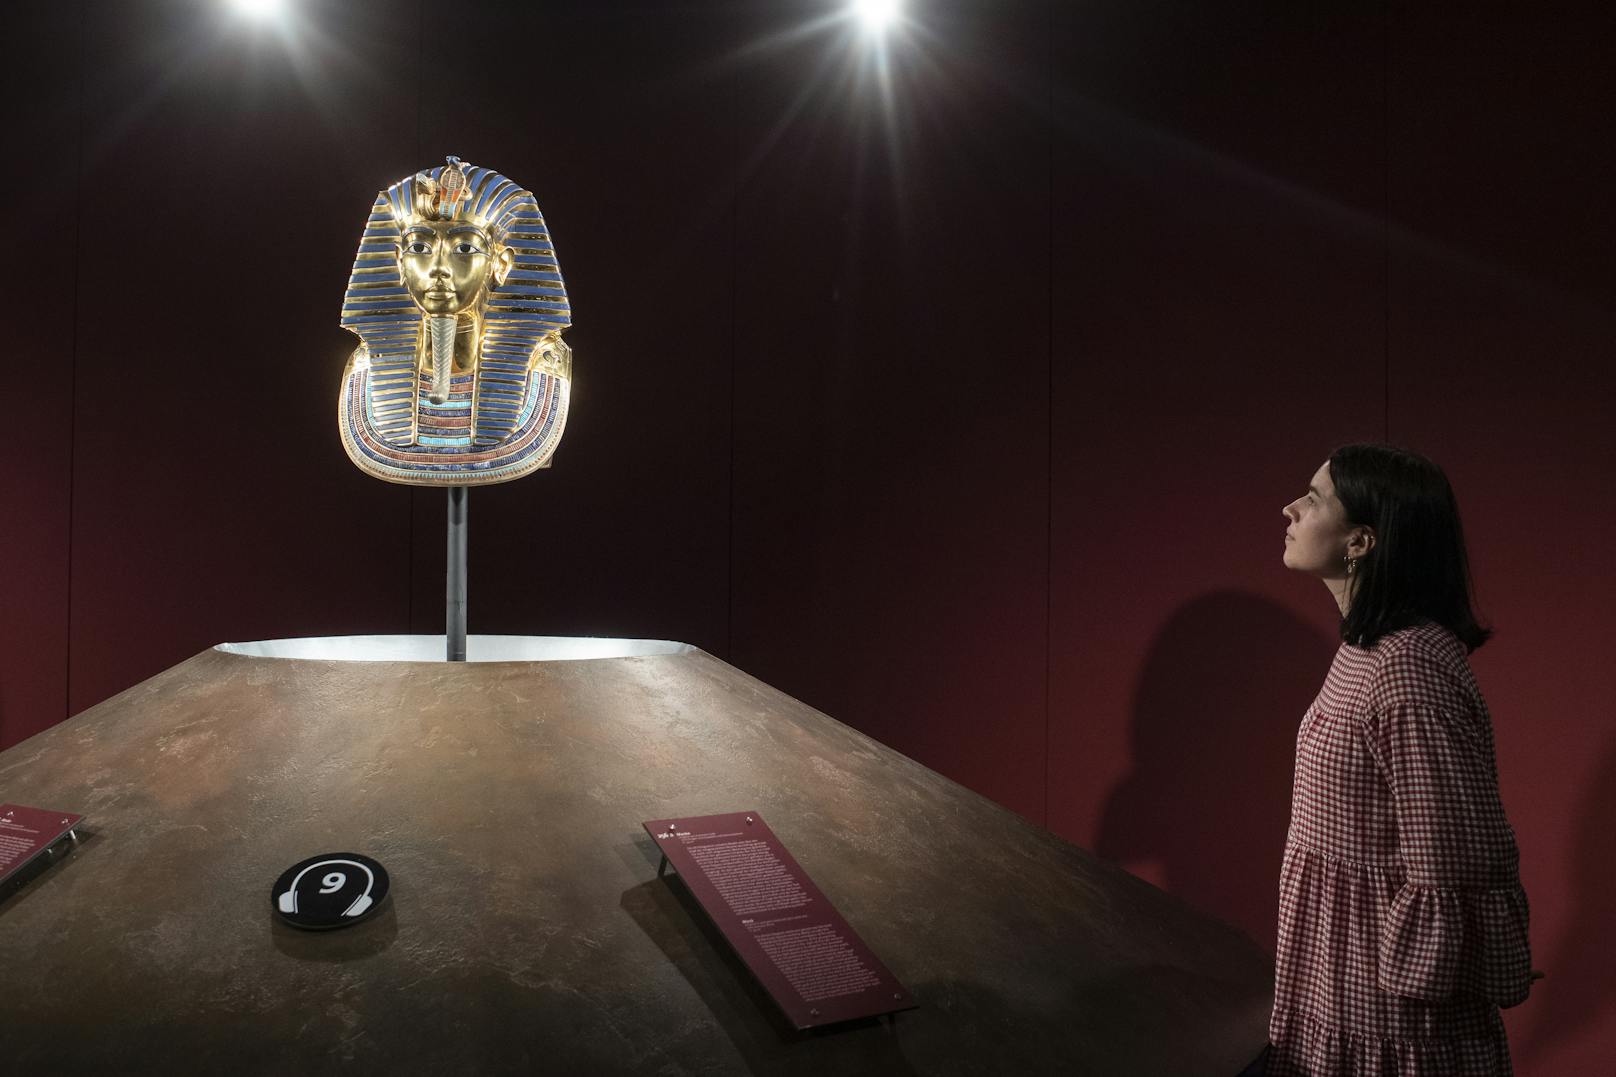 Die Ausstellung "Tutanchamun: Sein Grab und die Schätze" in in der Halle 622, Zürich, zeigt noch bis 1. November 2020 original- und maßstabsgetreue Nachbauten der Grabkammern und Schätze.